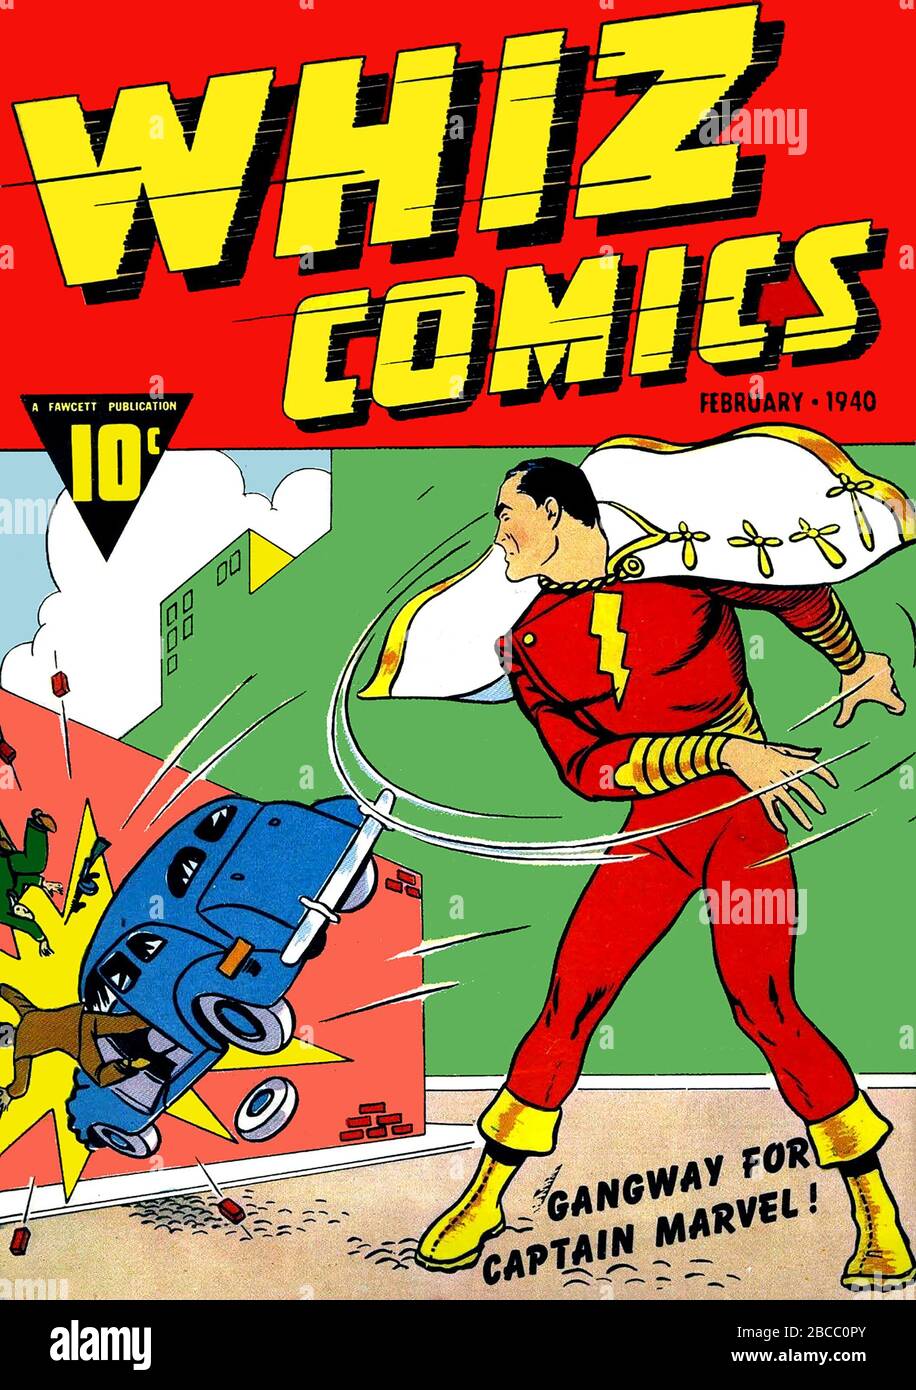 LA prima apparizione DI CAPTAIN MARVEL fu a Whiz Comics nel febbraio 1940 Foto Stock